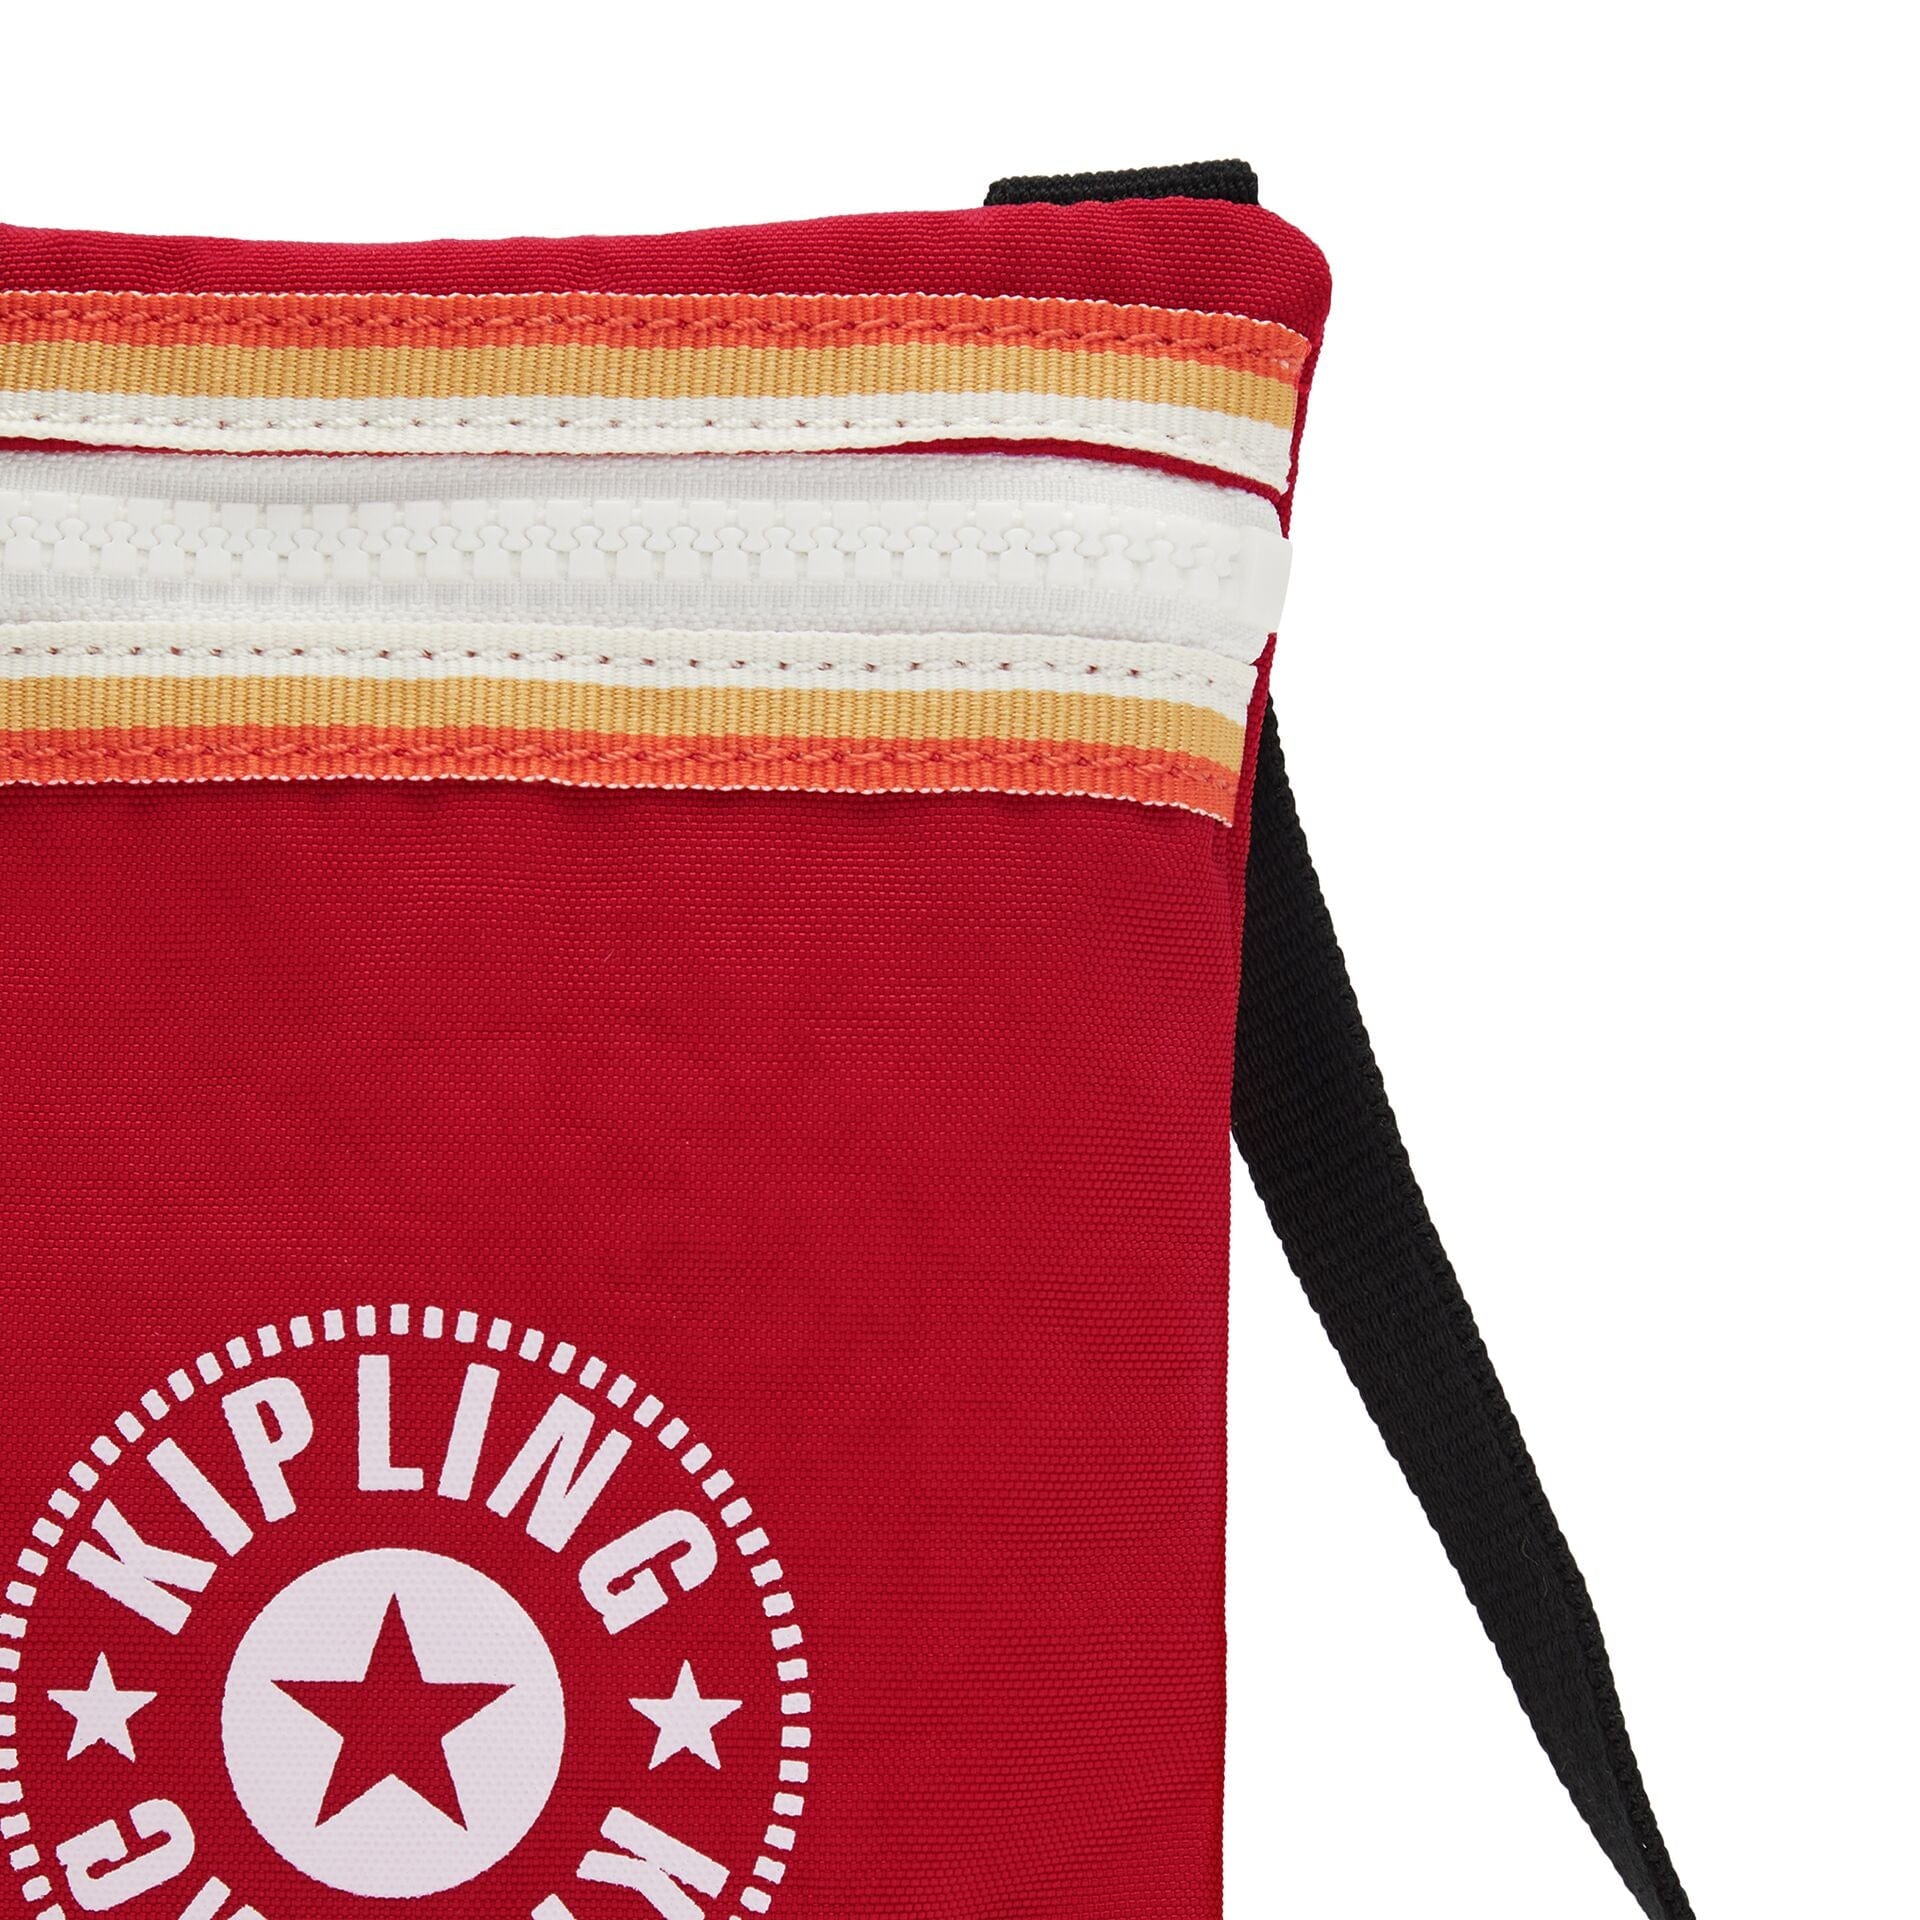 KIPLING-AFIA LITE-Phone bag-Red Rouge C-I6650-82U